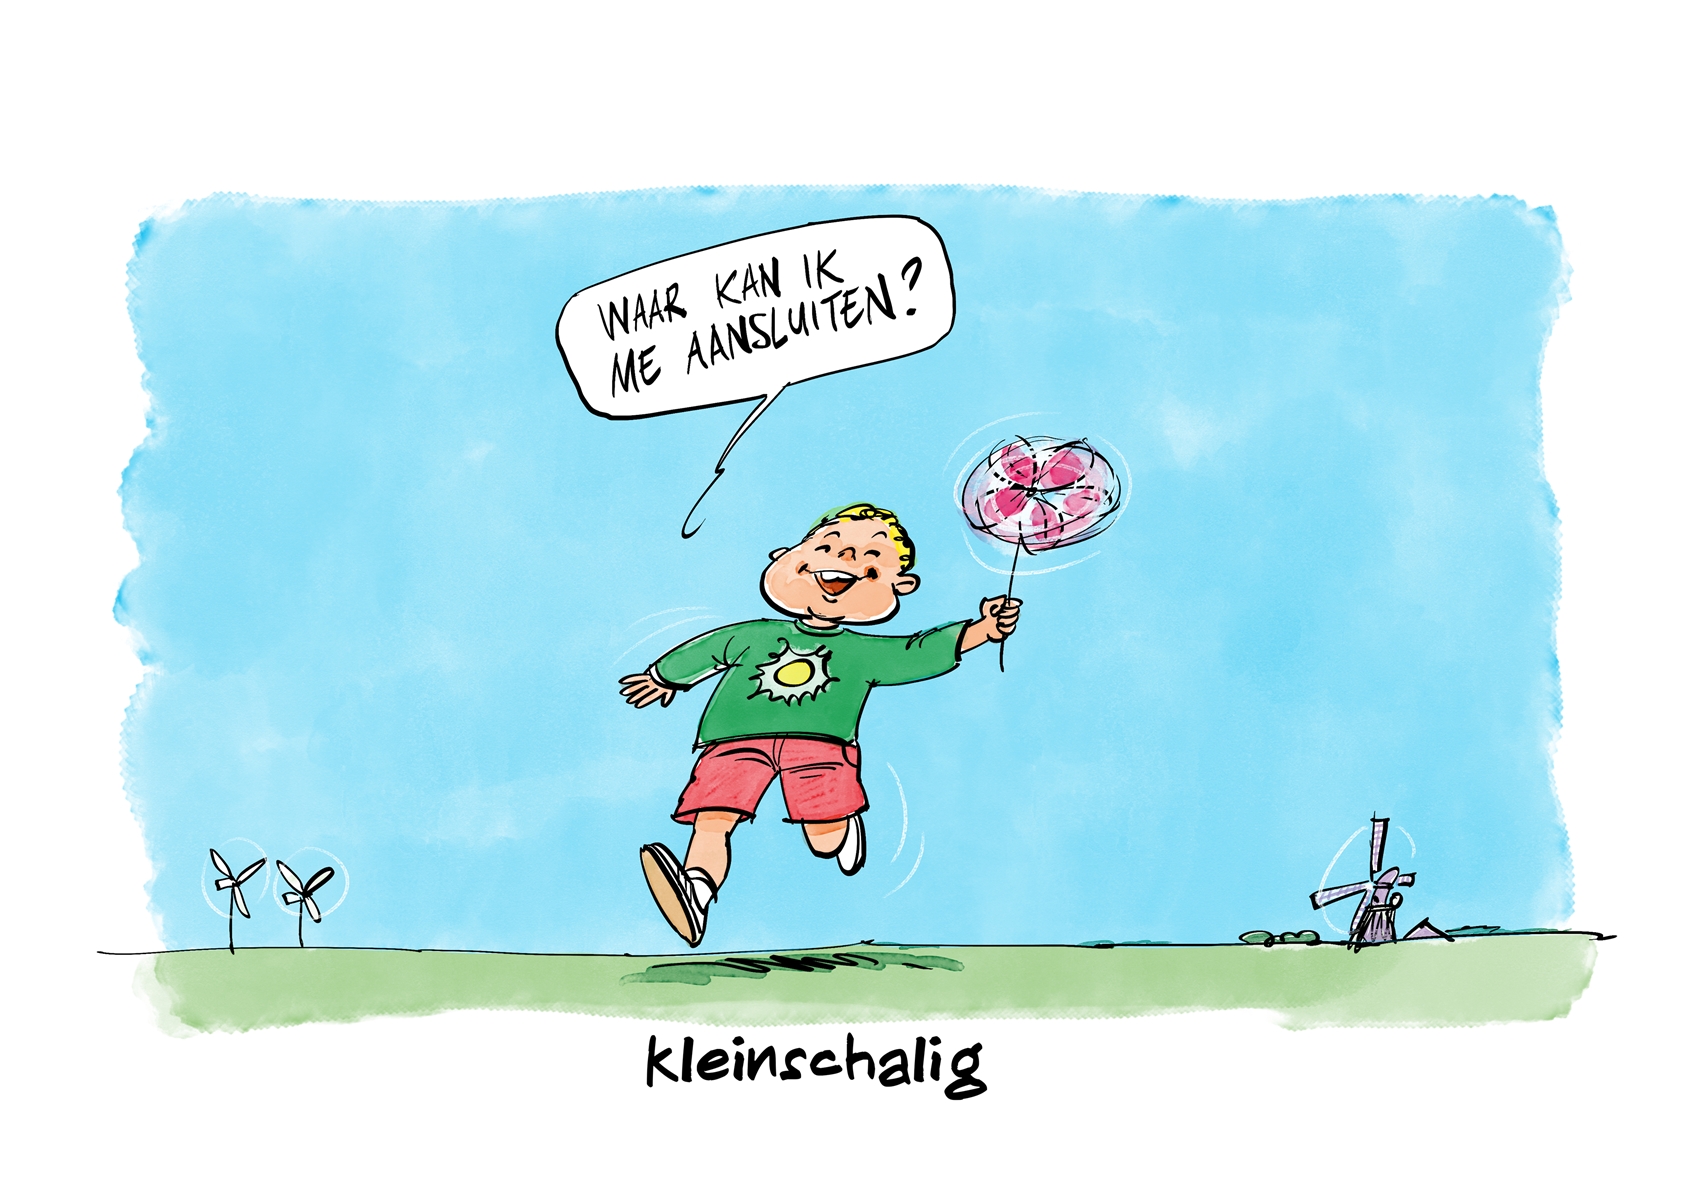 Titel: kleinschalig. Afgebeeld: klein kind met een klein windmolentje in de hand. Met als tekst 'Waar kan ik me aansluiten?'